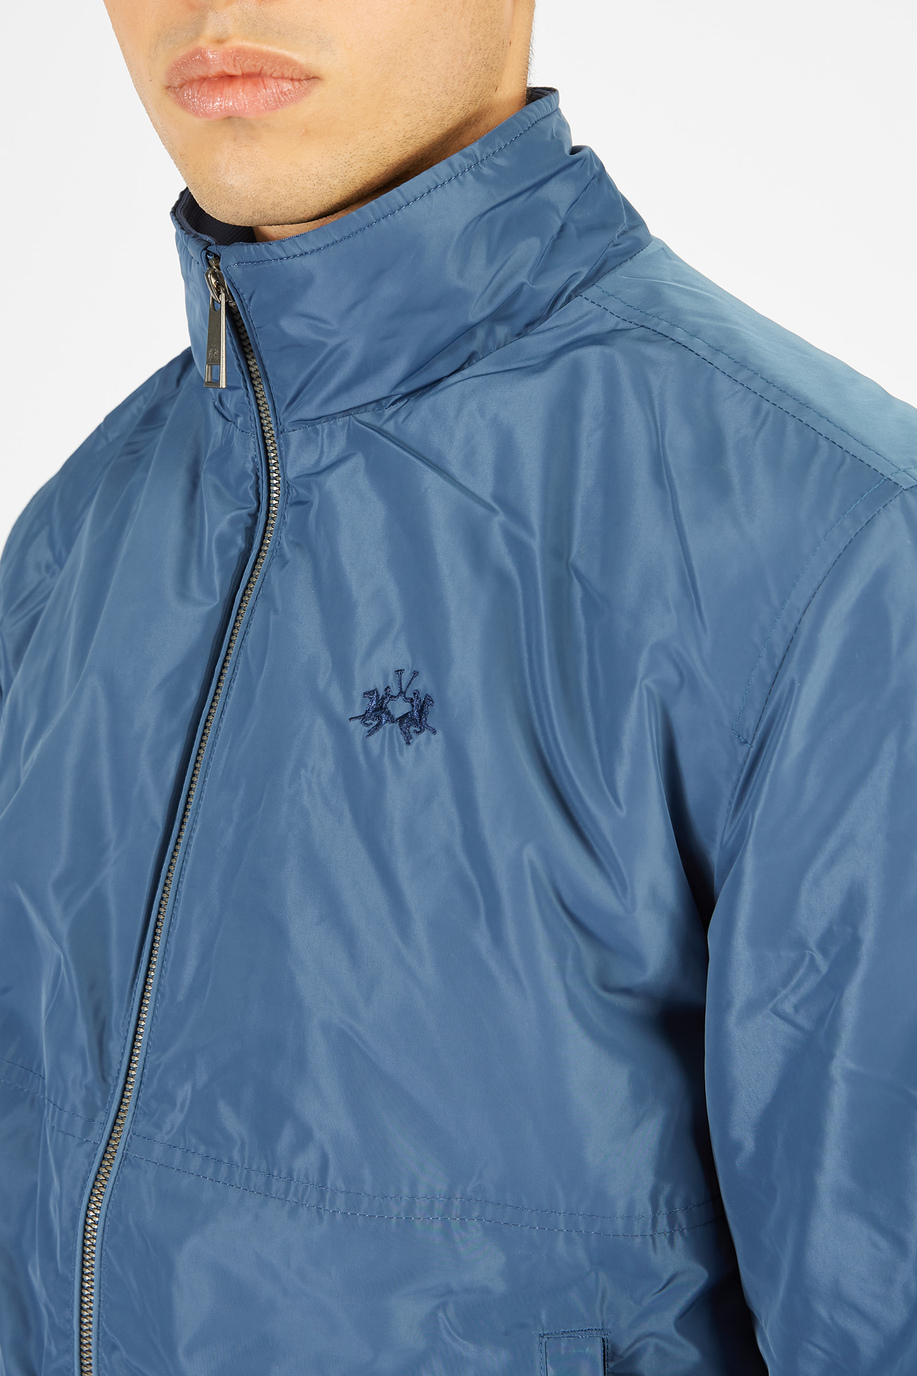 Men’s jacket in nylon regular fit model - Rainproof & Windproof | La Martina - Official Online Shop